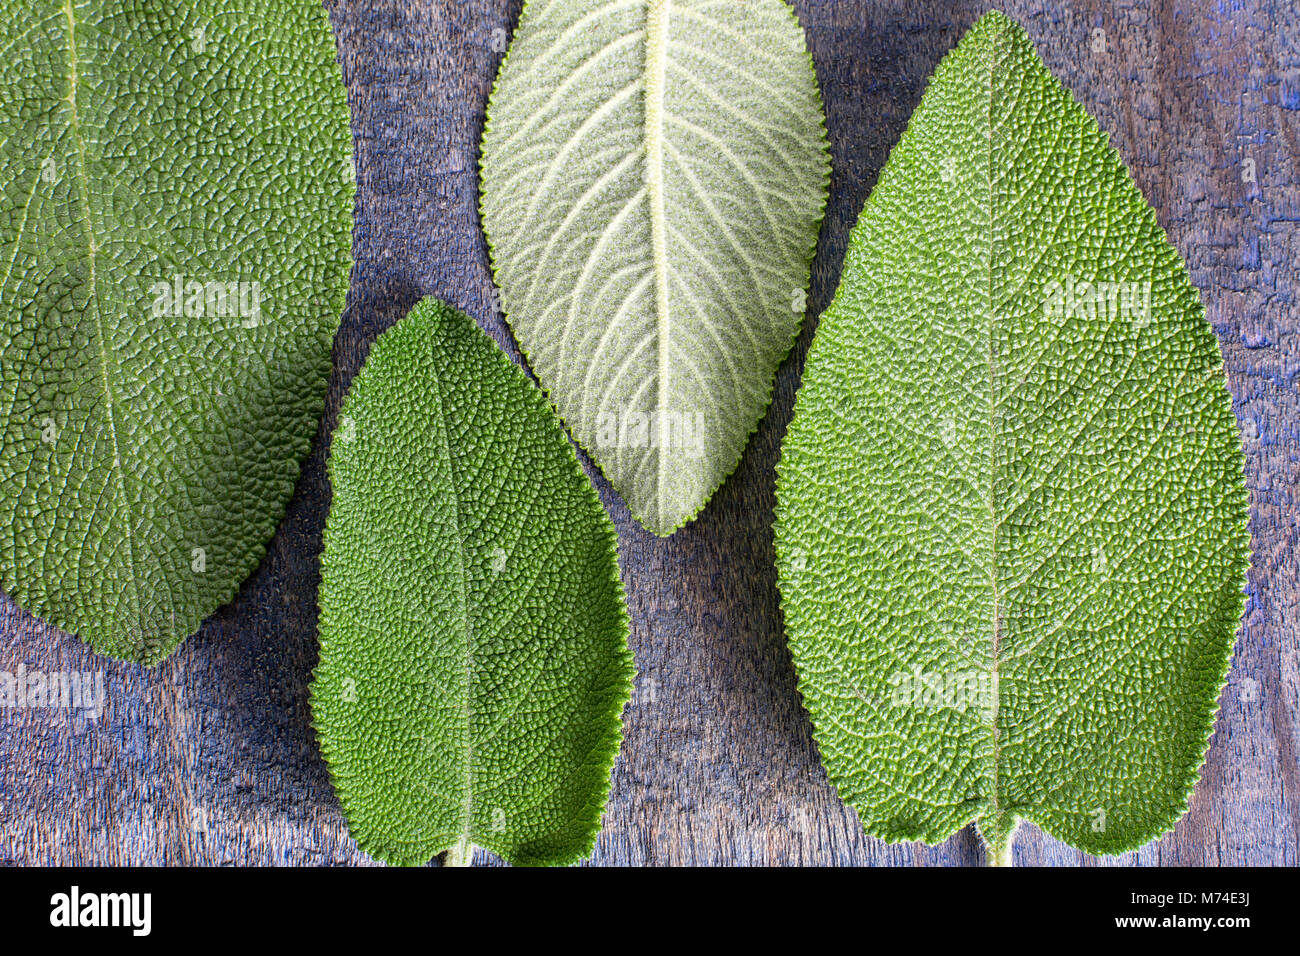 alternative medicine matico plant leafs in Ecuador Stock Photo